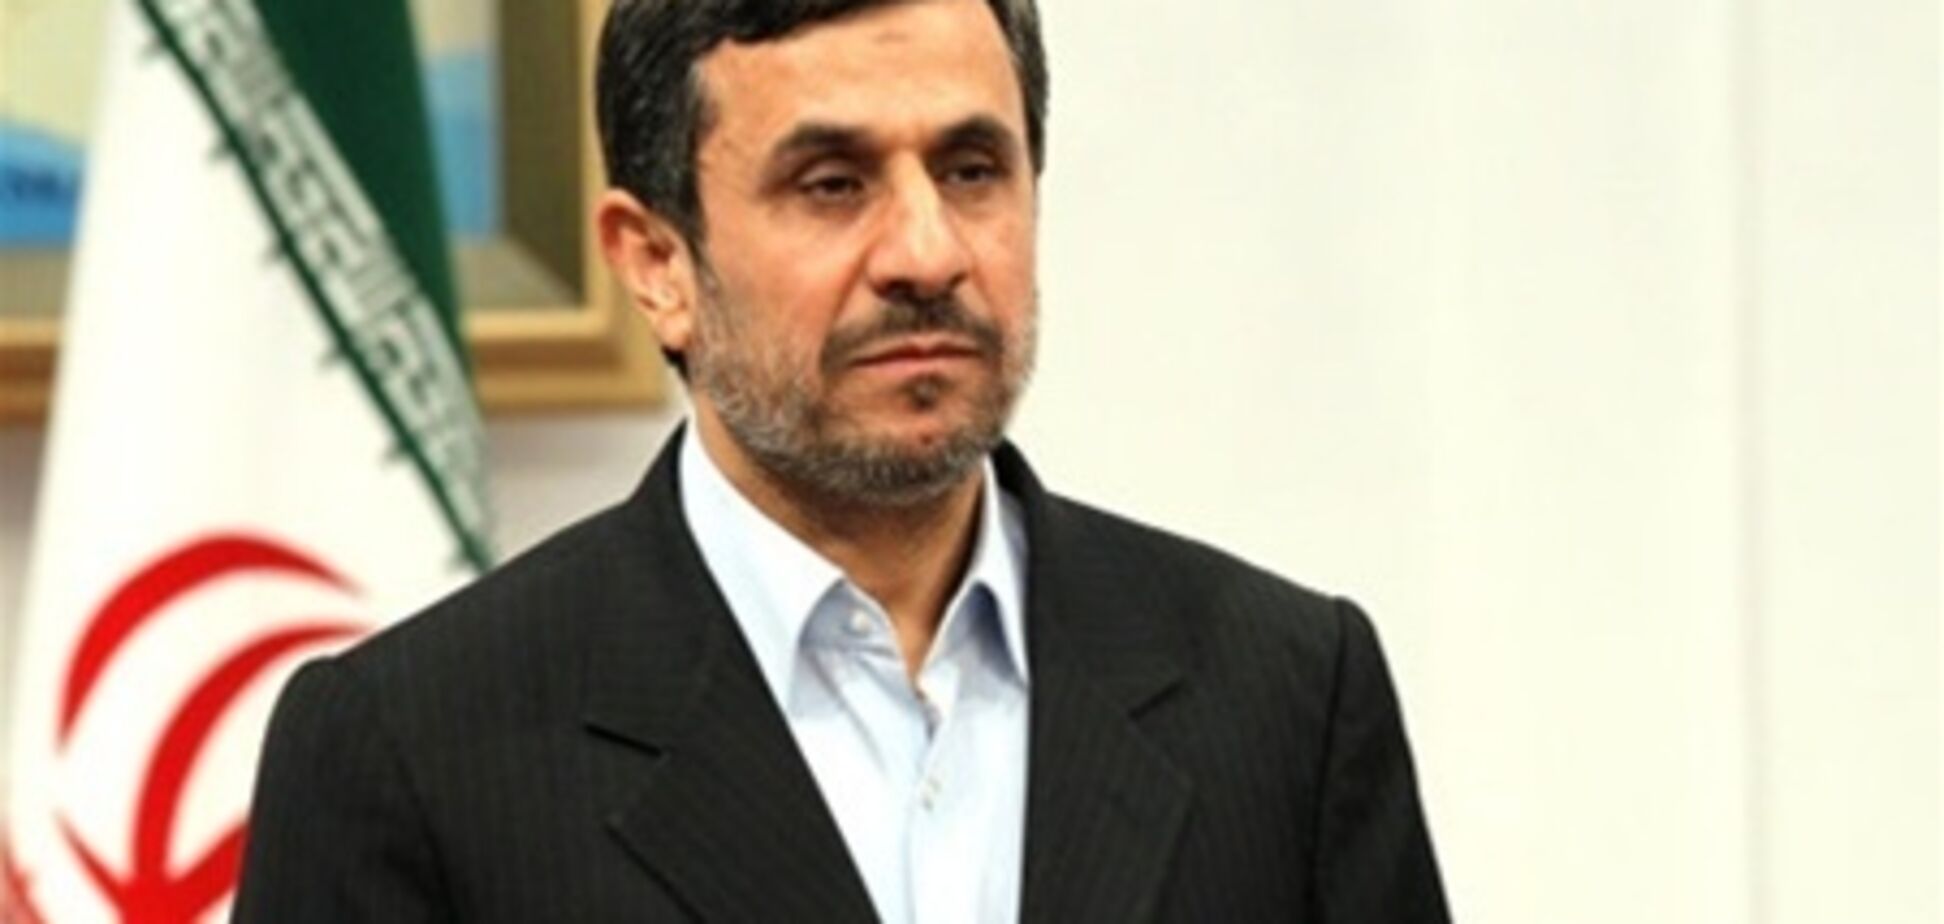 Ахмадинеджад распродал официальные подарки на аукционе 